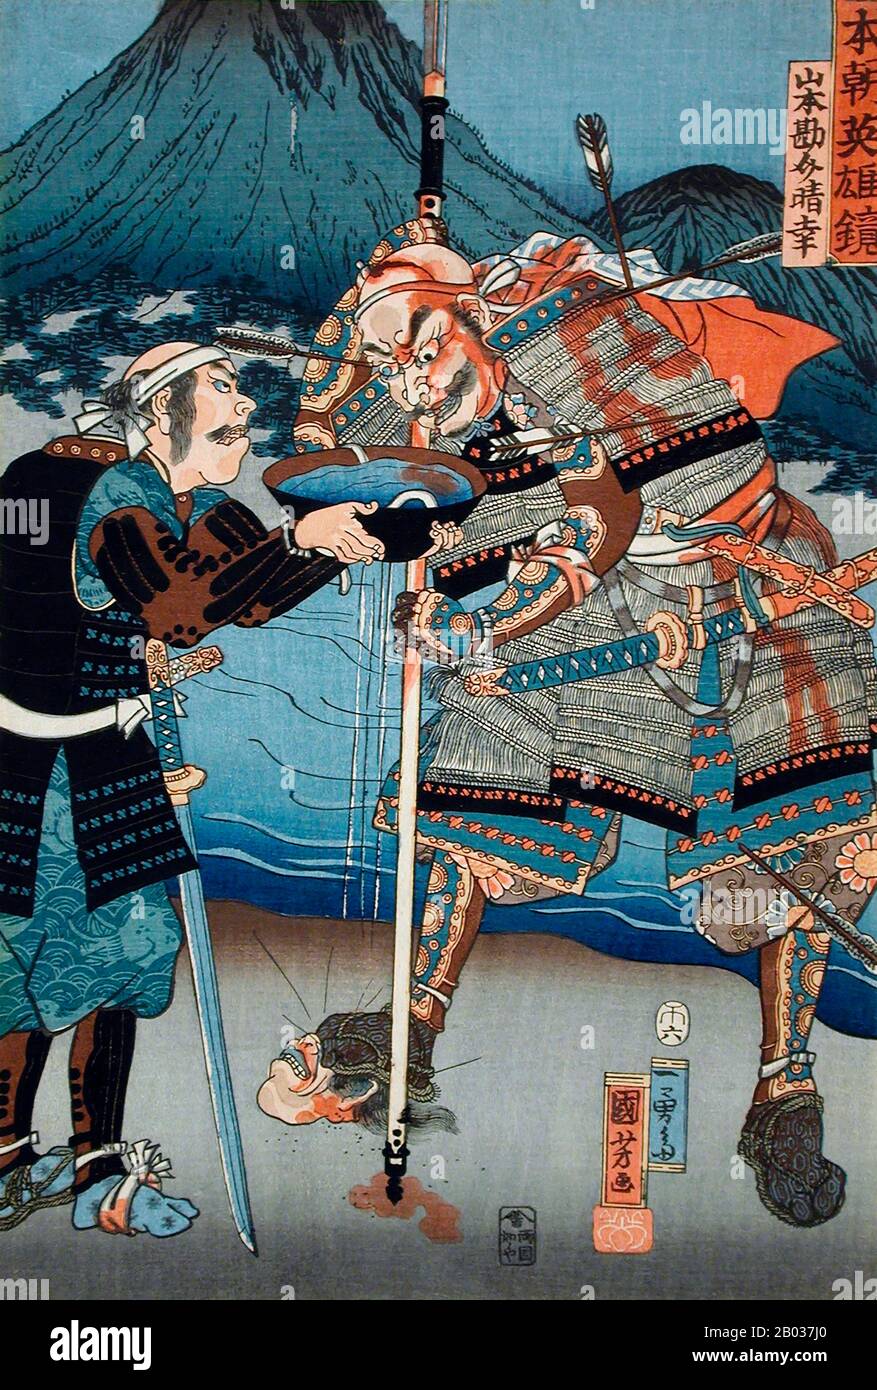 Utagawa Kuniyoshi (* 1. Januar, † 14. April 1861) war einer der letzten großen Meister des japanischen Ukiyo-e-Stils der Holzschnitte und der Malerei. Er ist mit der Utagawa-Schule verbunden. Die Bandbreite der bevorzugten Themen von Kuniyoshi umfasste viele Genres: Landschaften, schöne Frauen, Kabuki-Schauspieler, Katzen und Fabeltiere. Er ist bekannt für Darstellungen der Schlachten von Samurai und legendären Helden. Sein Kunstwerk war von westlichen Einflüssen in der Landschaftsmalerei und Karikatur betroffen. Stockfoto